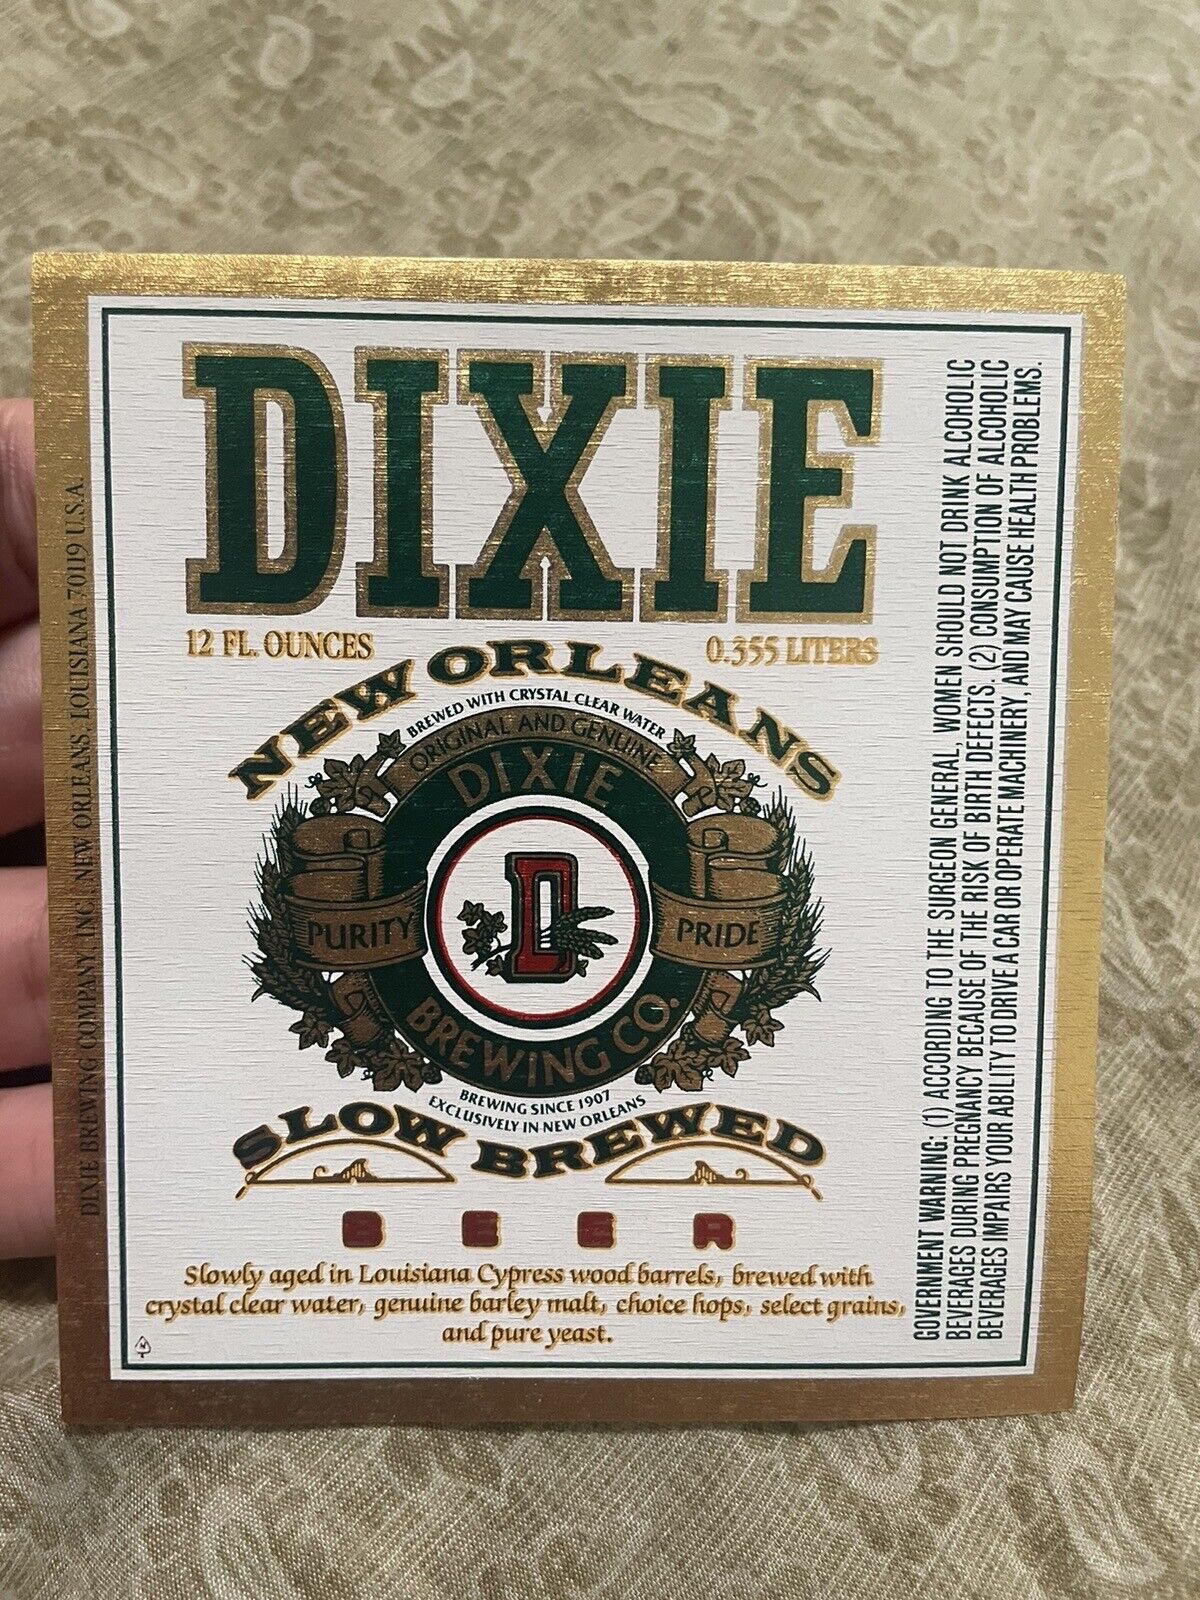 Vintage Dixie Beer New Orleans Bottle Label